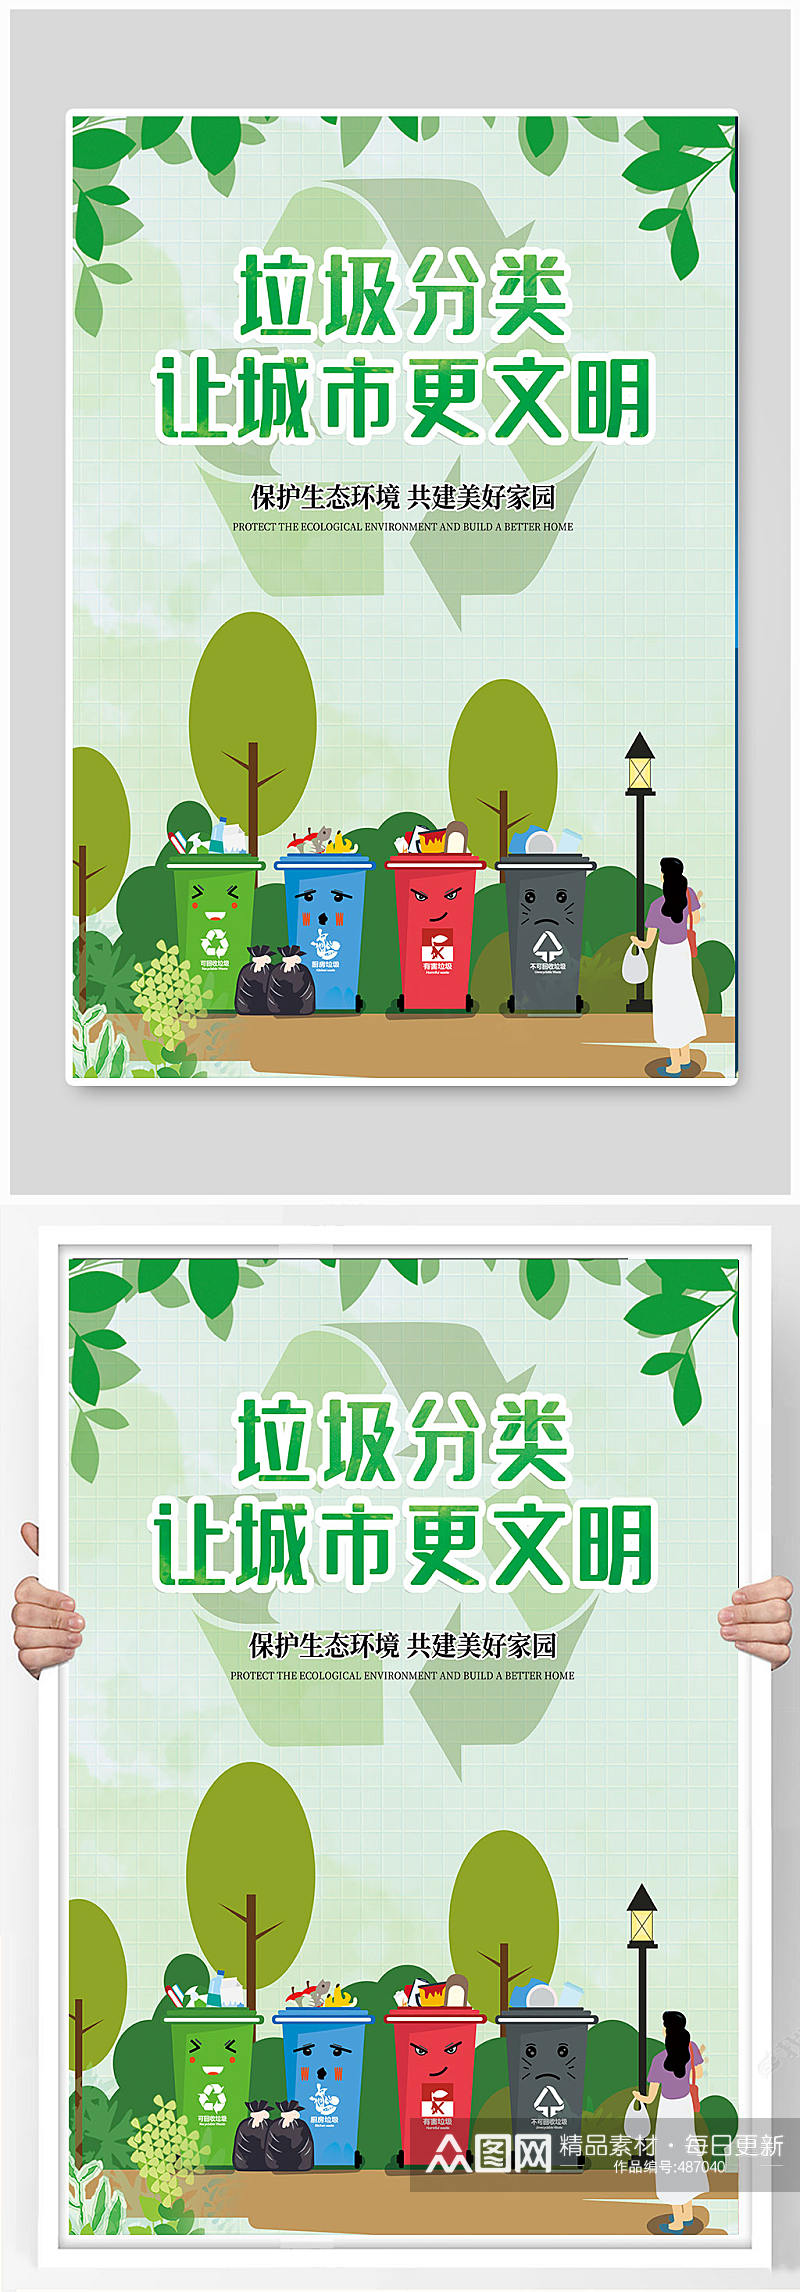 绿色环保垃圾分类海报环保宣传海报素材